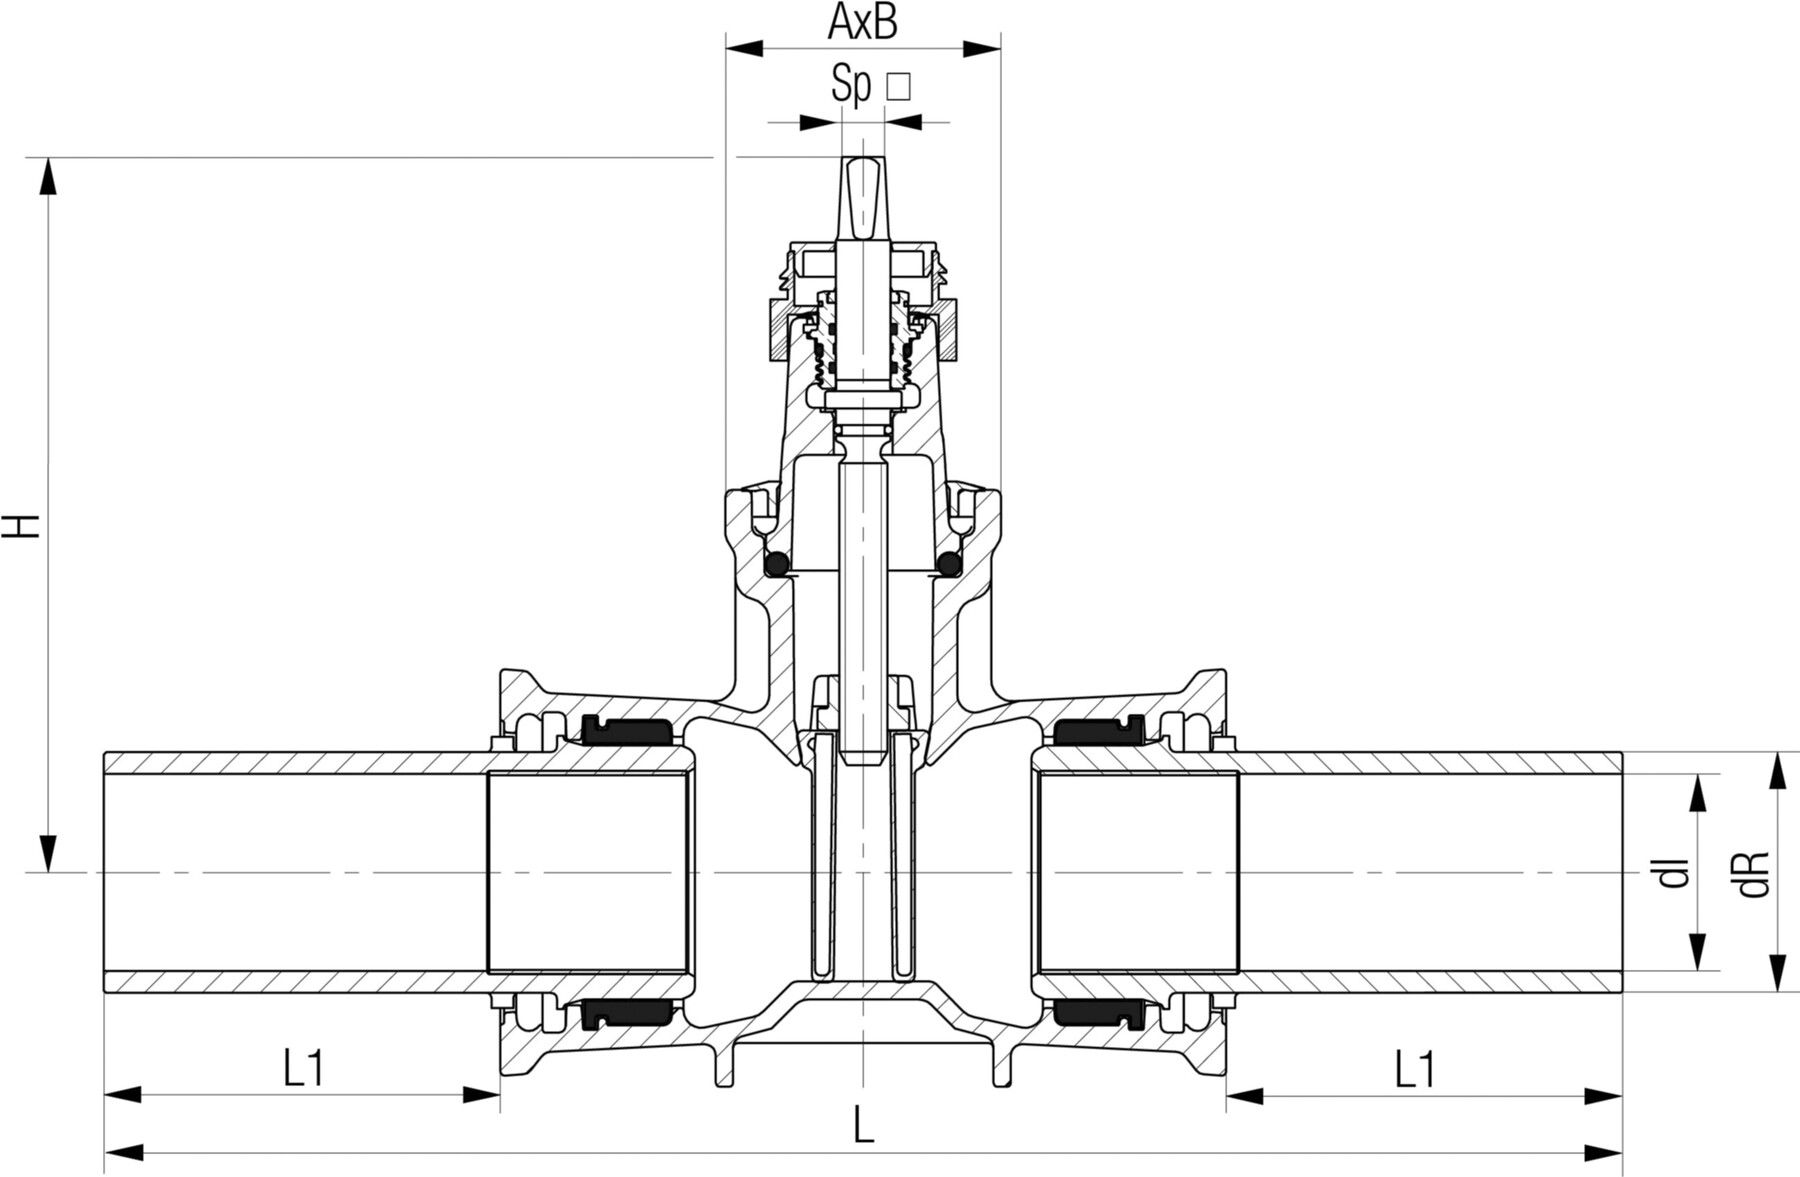 Schieber mit PE-Spitzenden Fig. 5460 DN 100 / d 125mm - Von Roll Armaturen